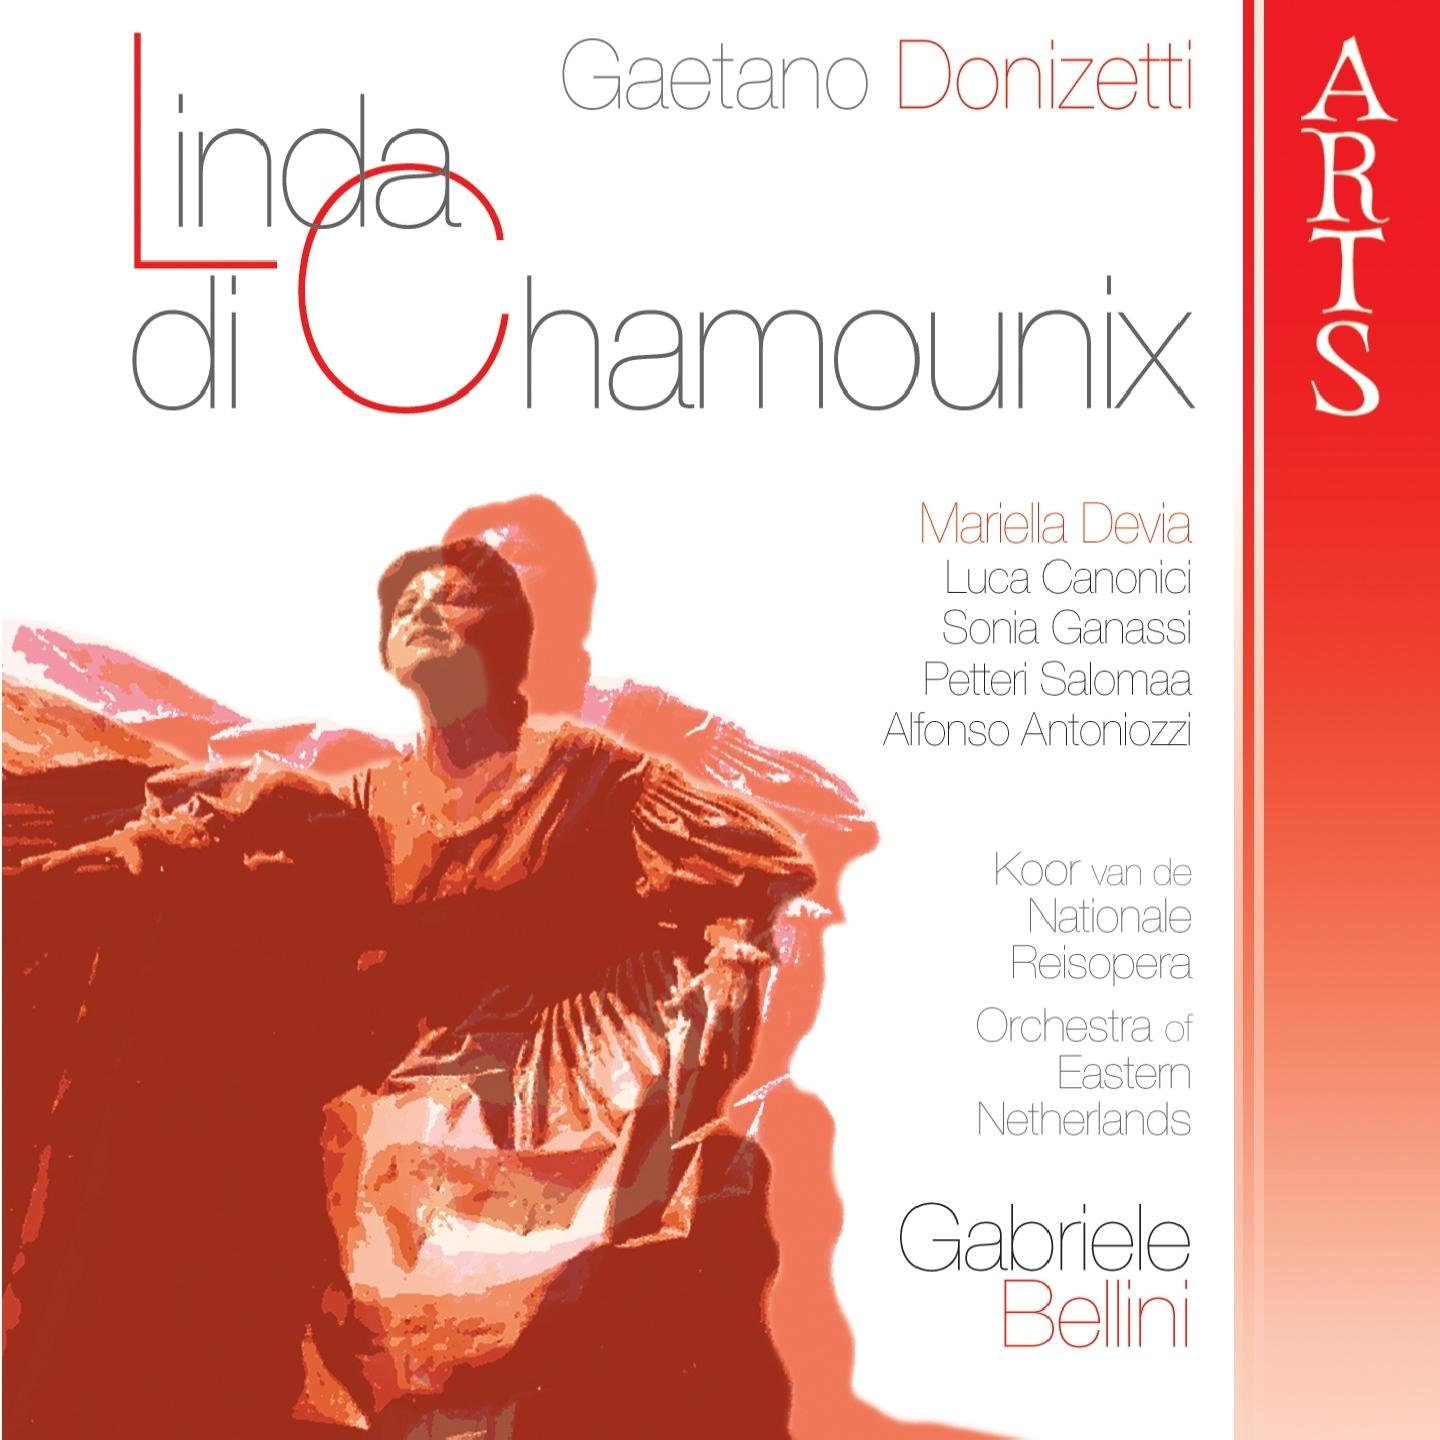 Linda di Chamounix: Act III - Il Ritorno, Preghiera - Quintetto a voci sole "Compi, o ciel,...la nostra speme..."